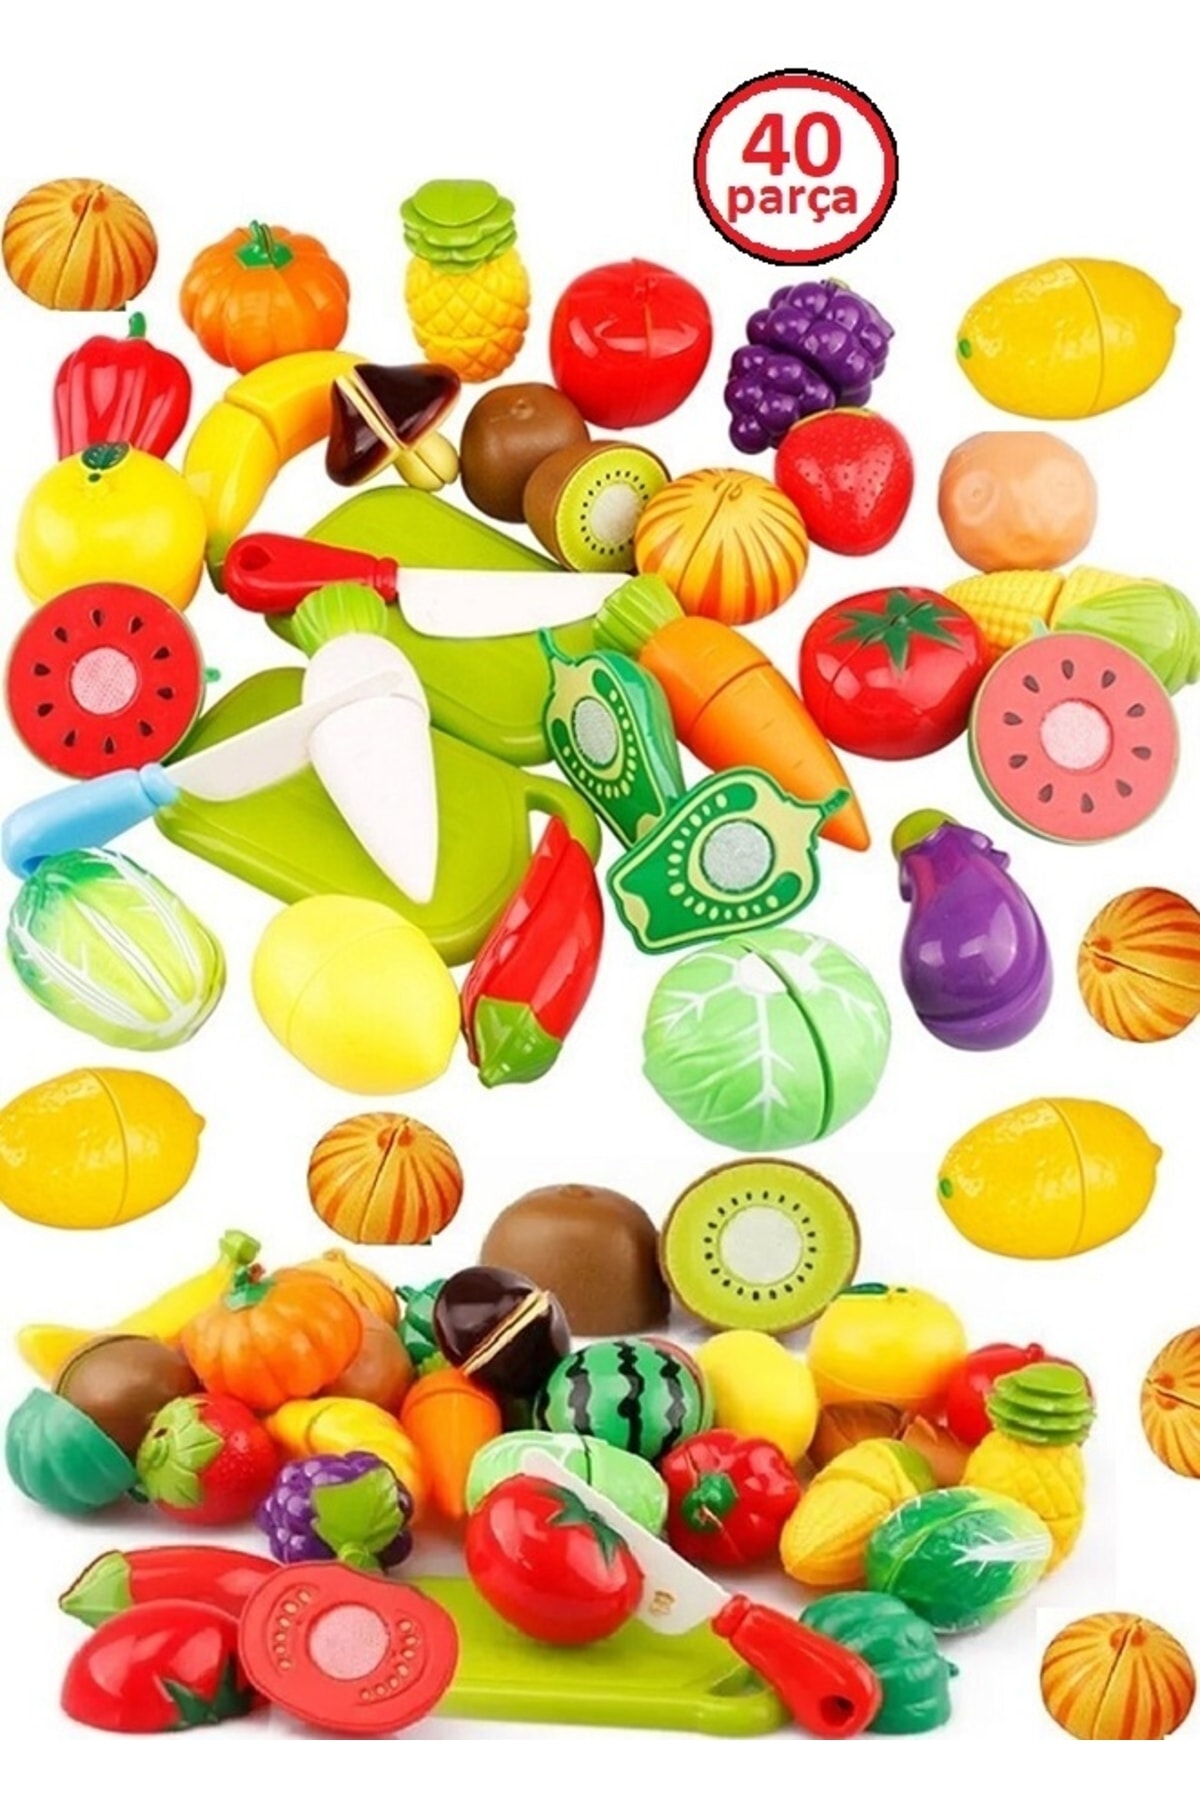 OYUNCAKSAHİLİ Meyve Sebze Kesilen Oyuncaklar Mutfak 40 Parça Kivi Havuç Limon Mısır Biber Çilek Dahaçok Oyuncak IV11308